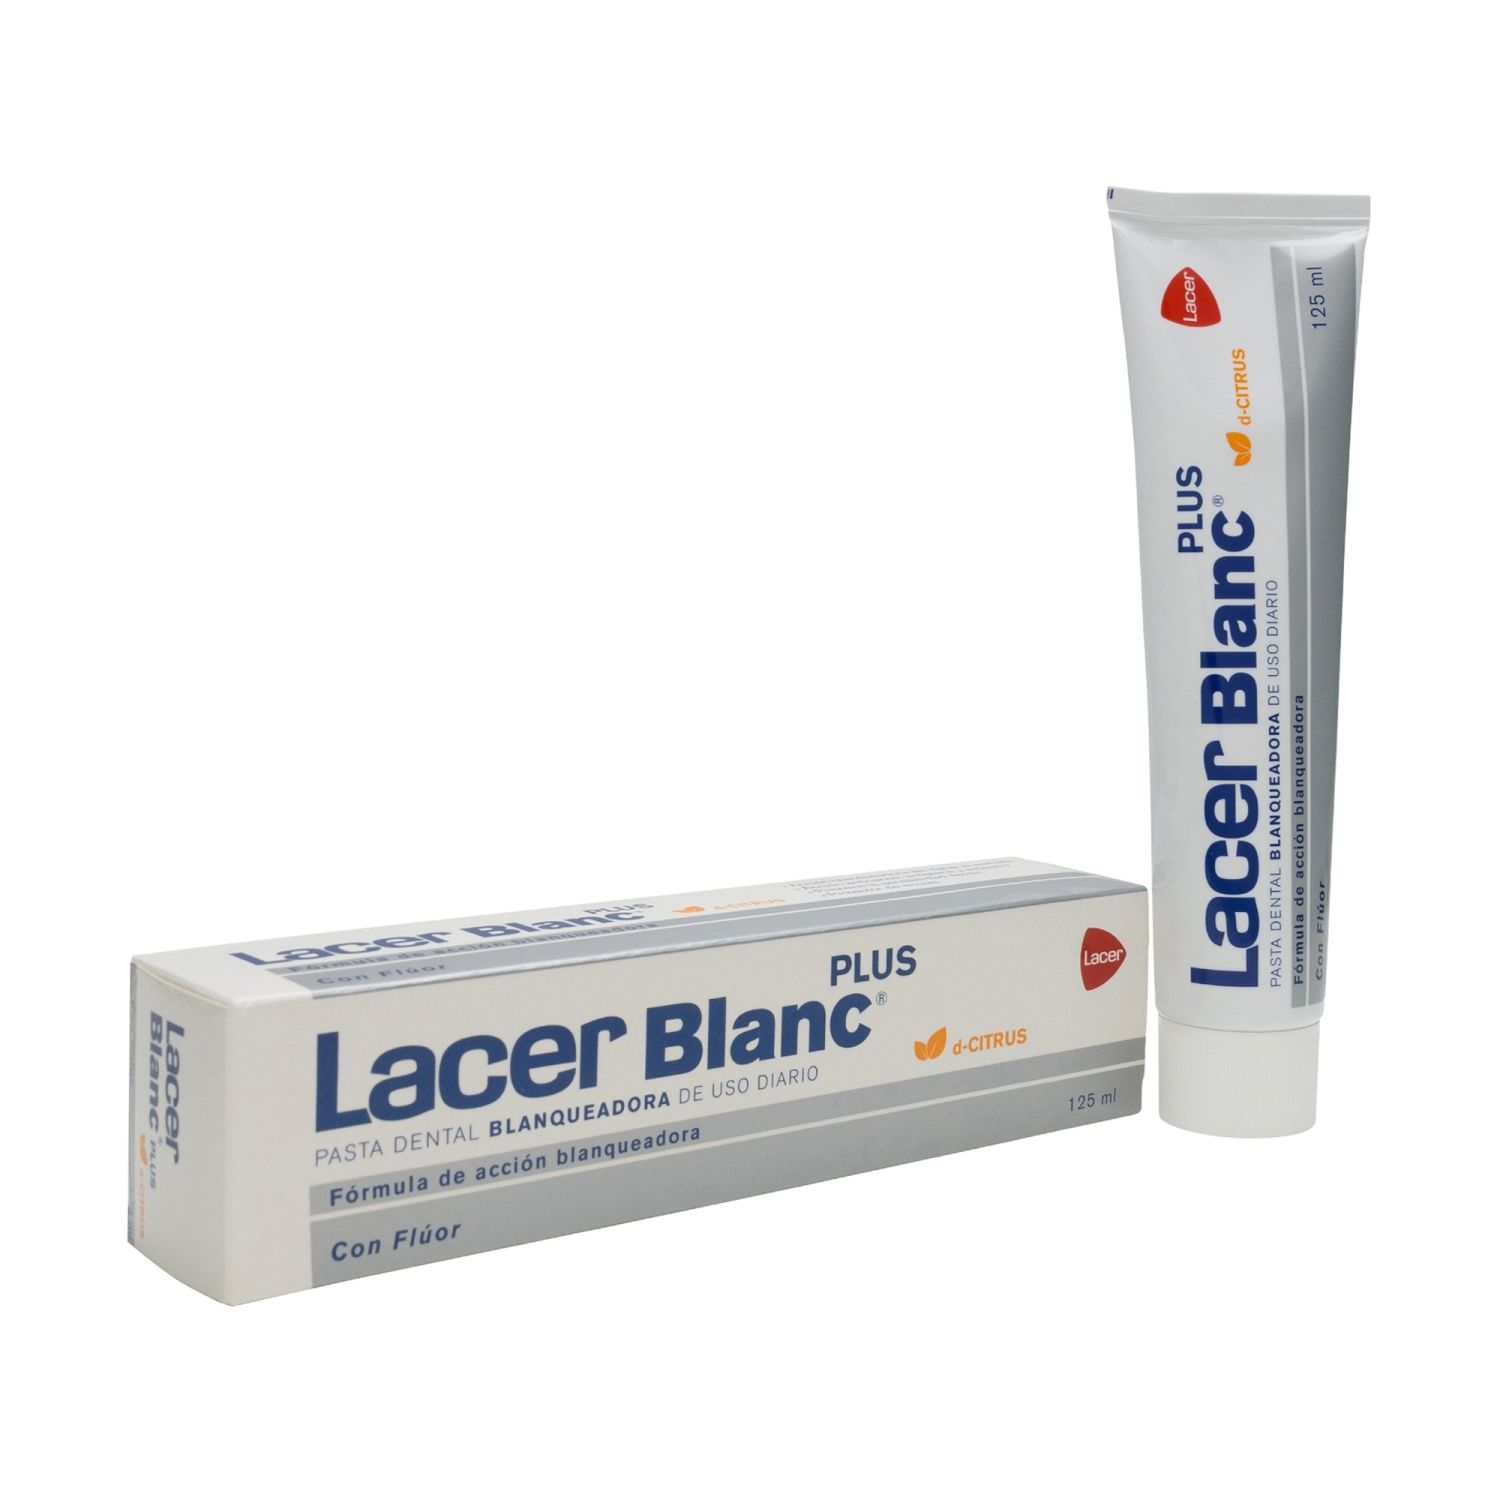 lacer blanc plus pasta dental blanqueadora citrus 125ml